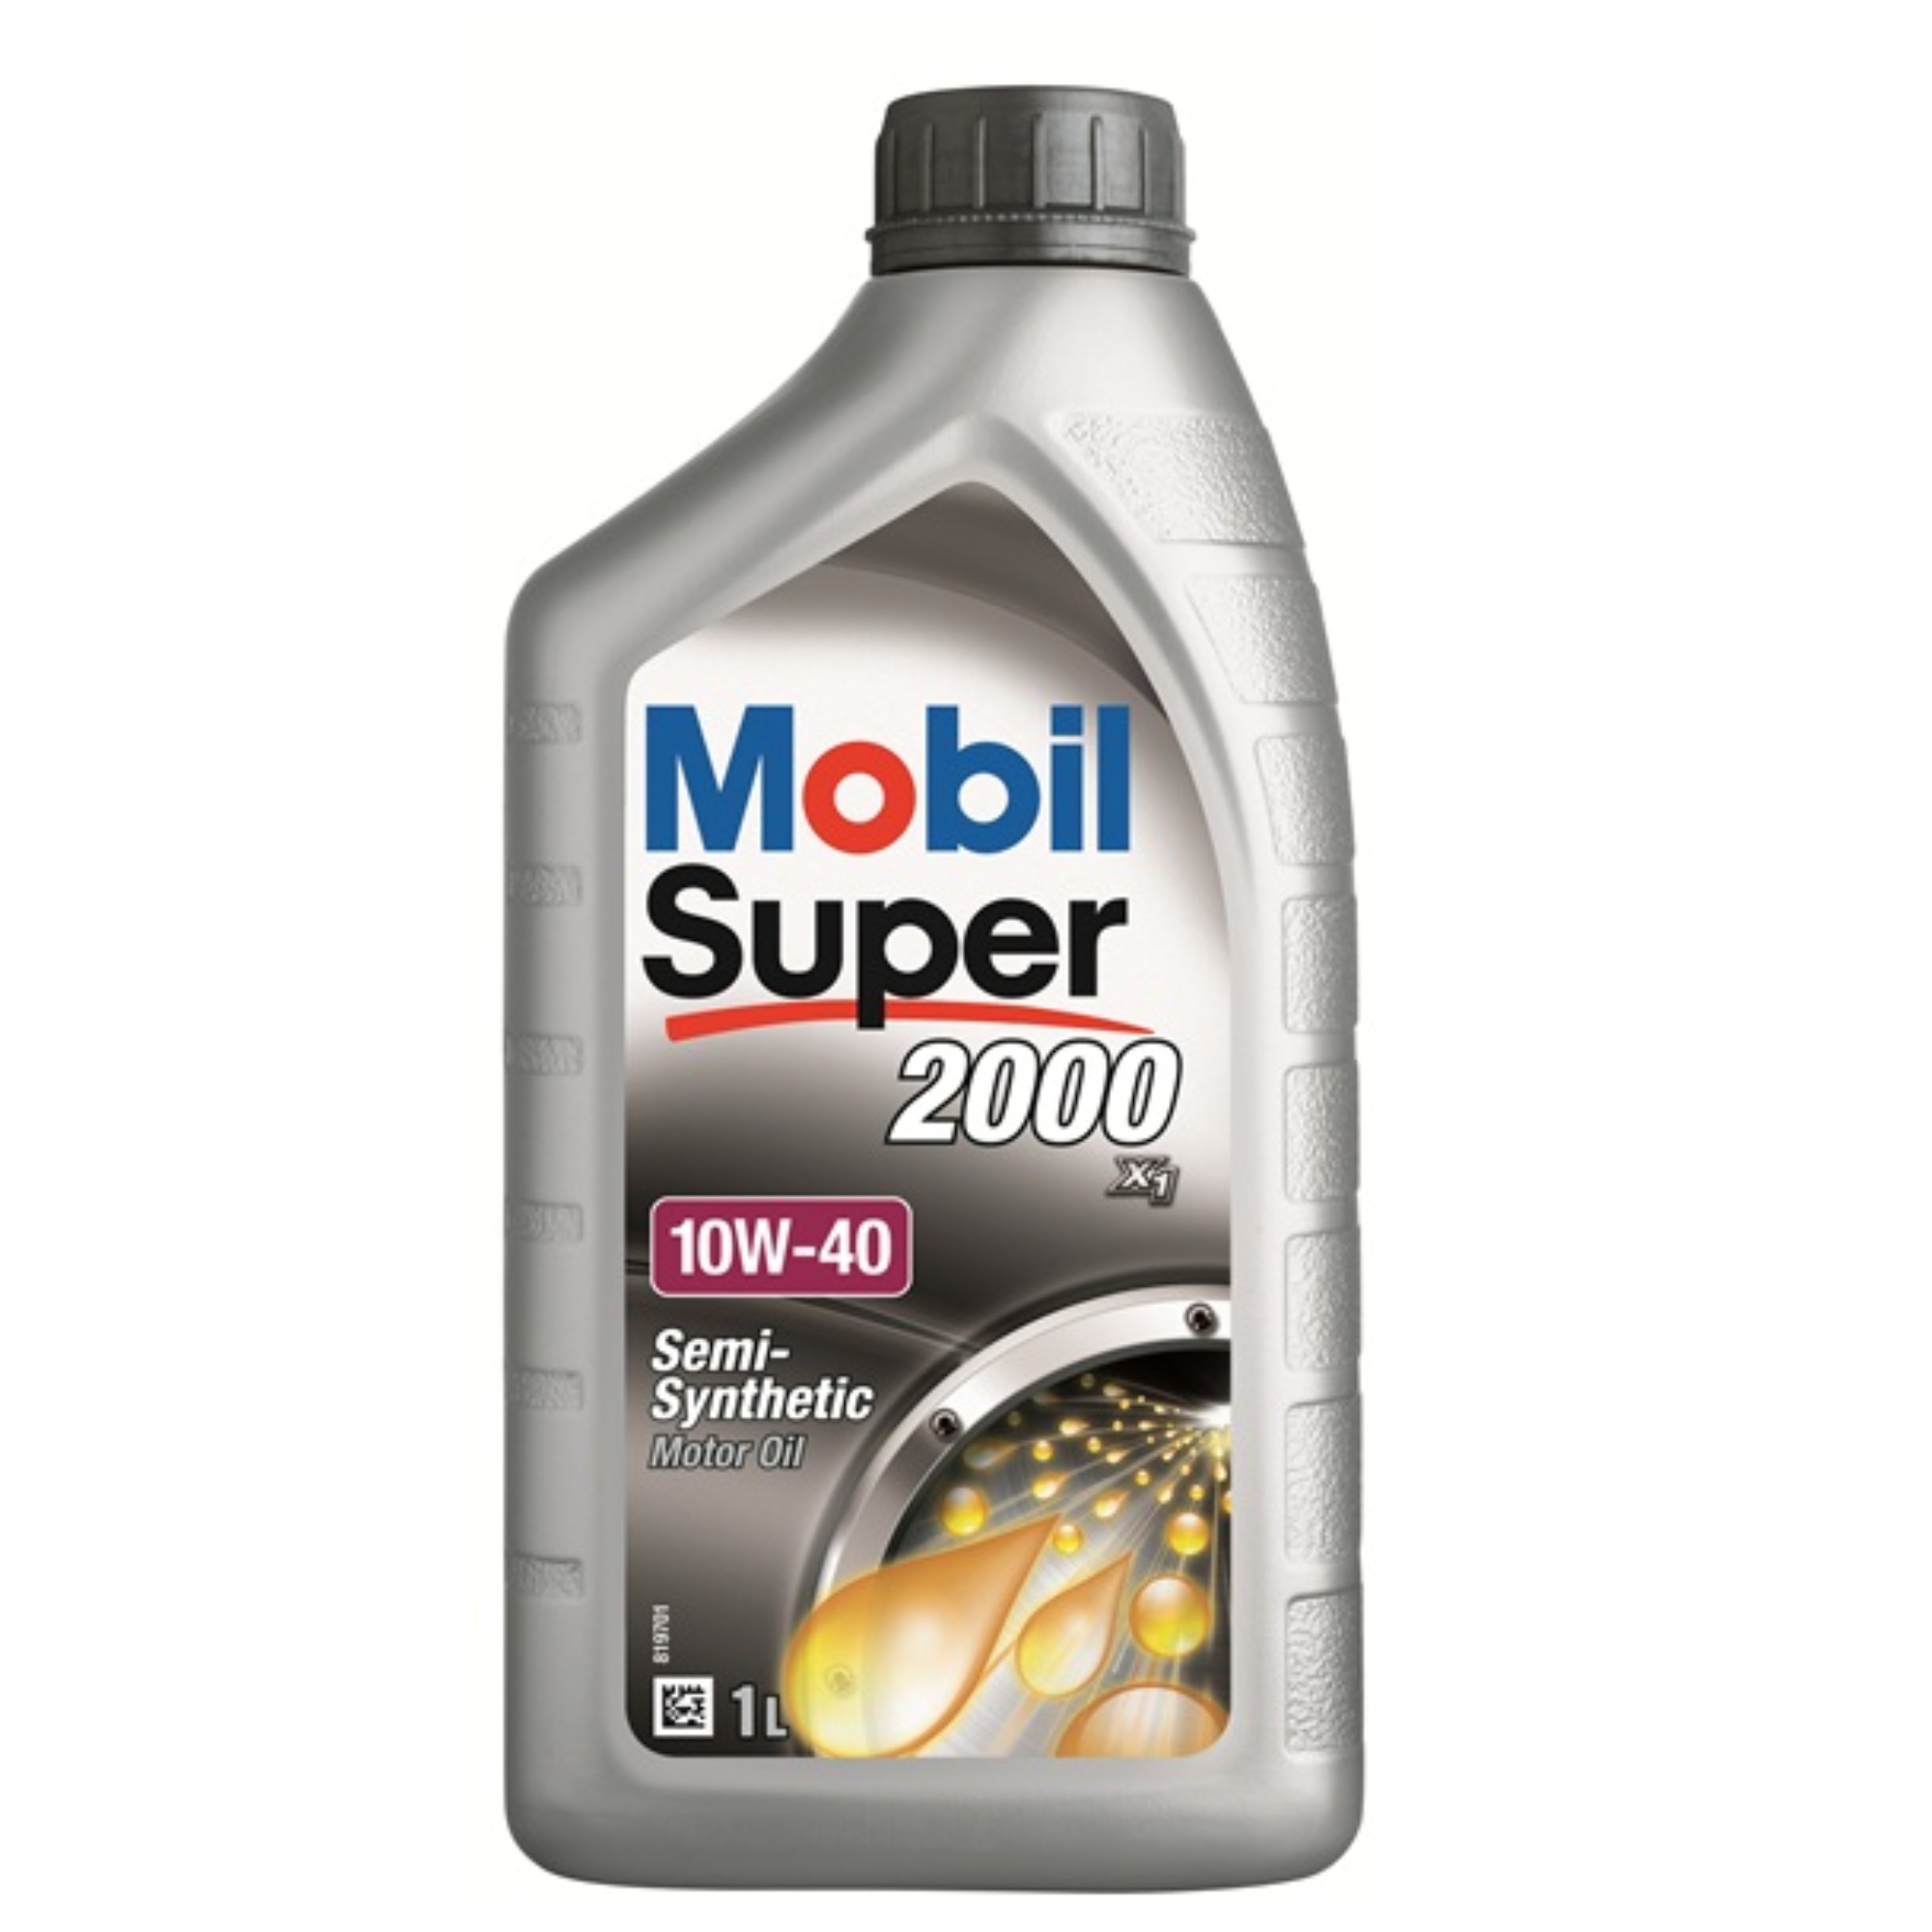 Mobil Super Engine Oil 2000 X1 10W40 1L